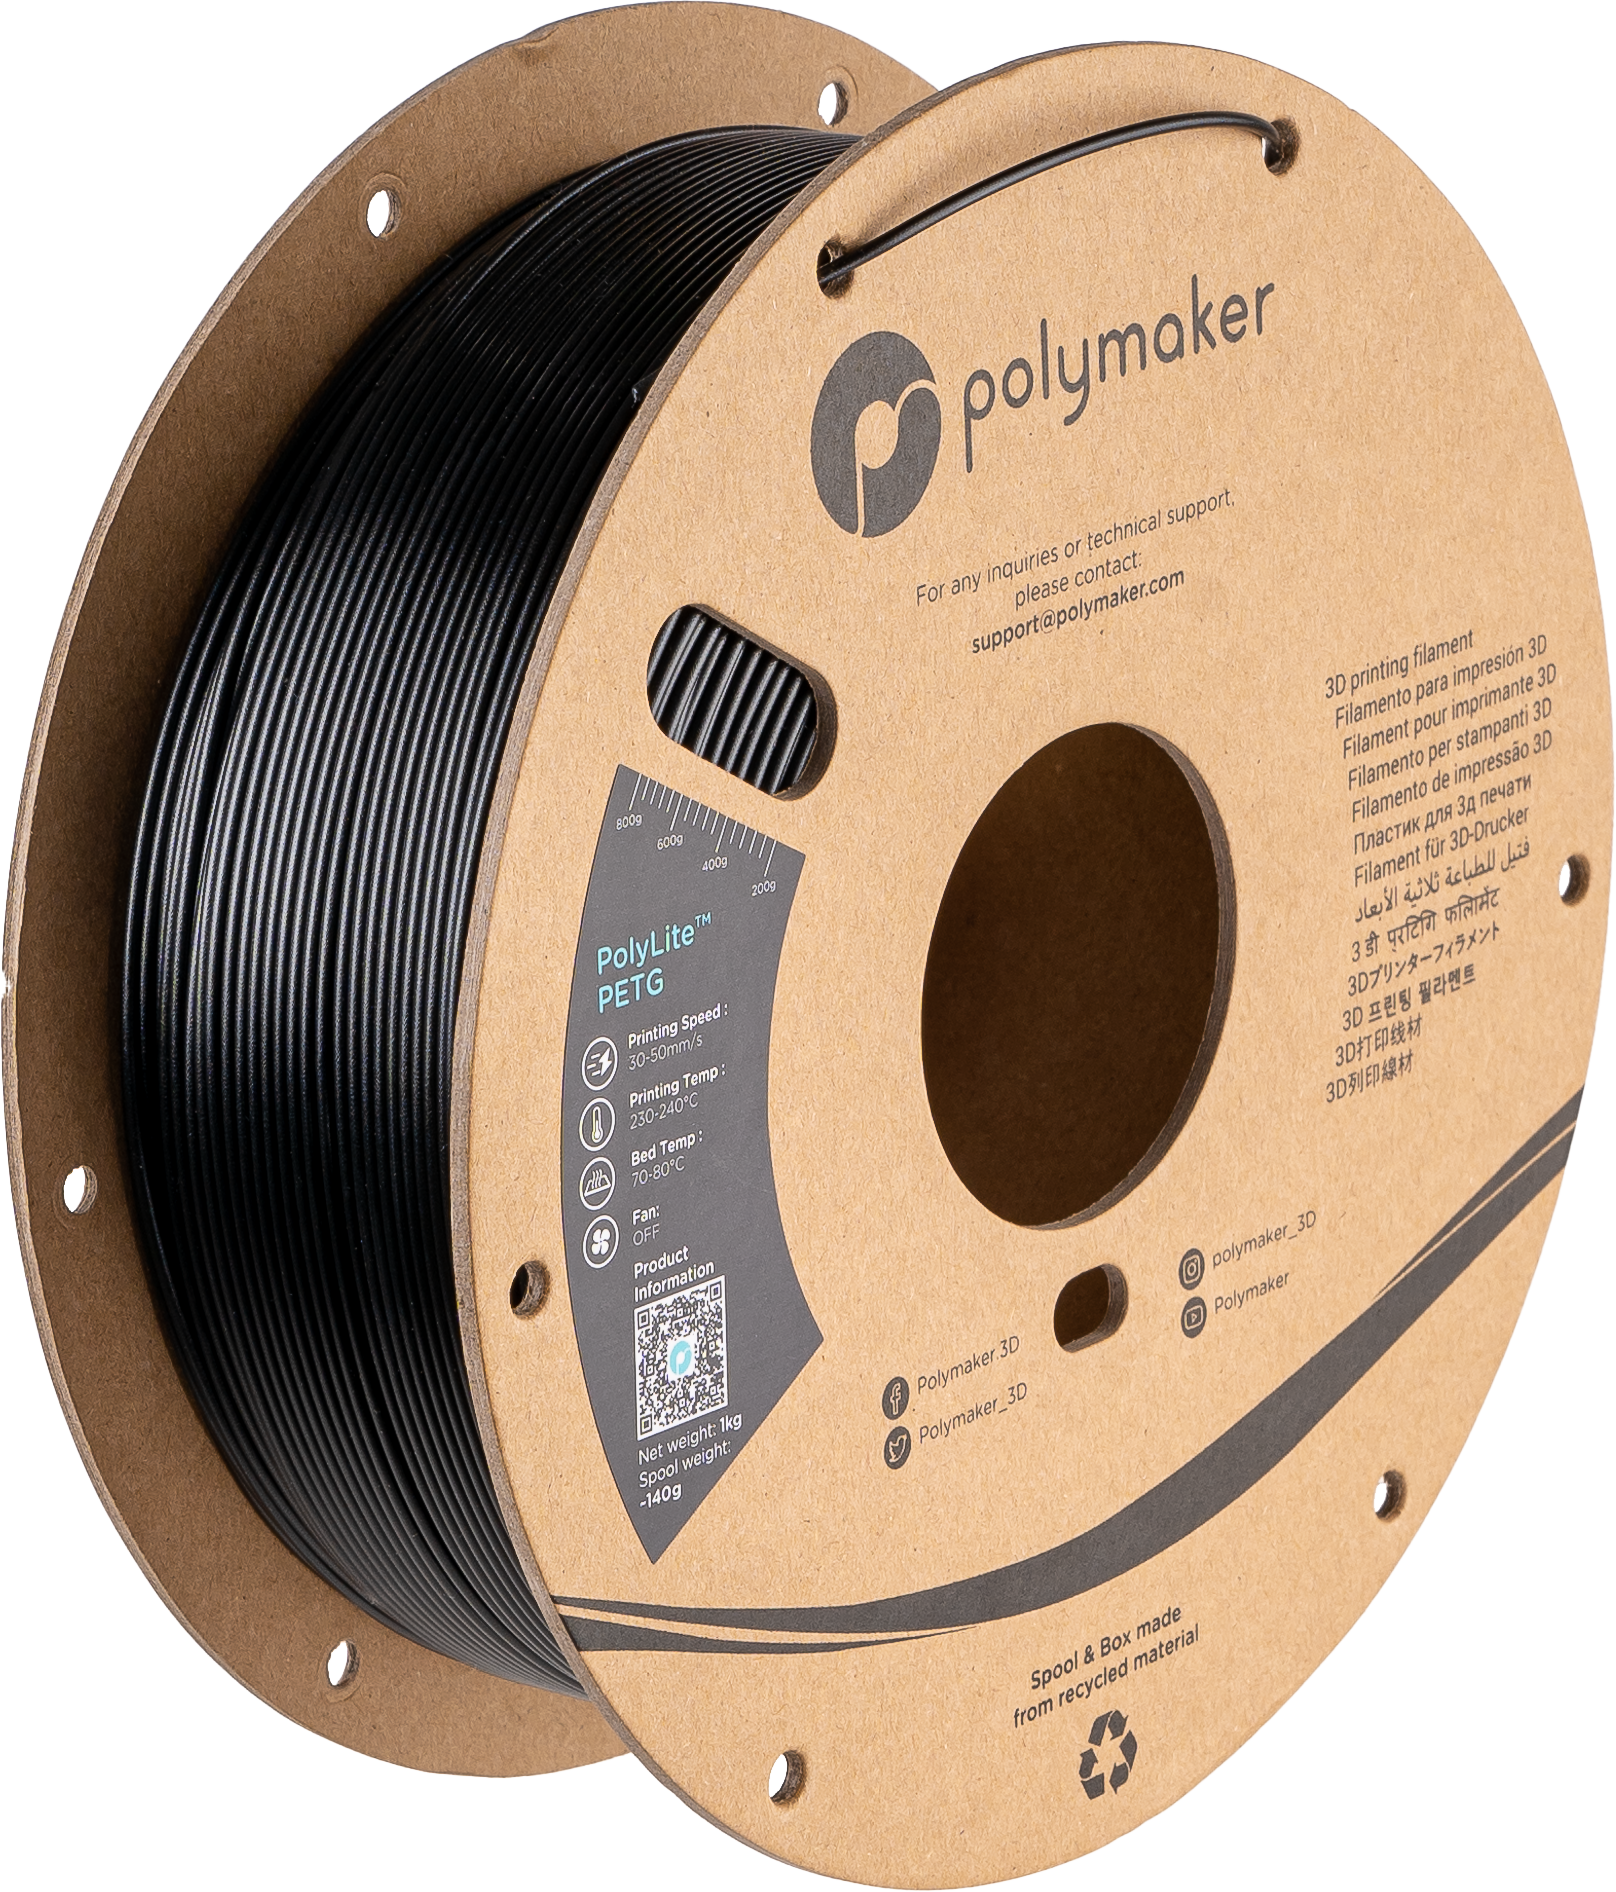 Polymaker PolyLite™ PETG - Black [1.75mm] (29,90€/Kg)